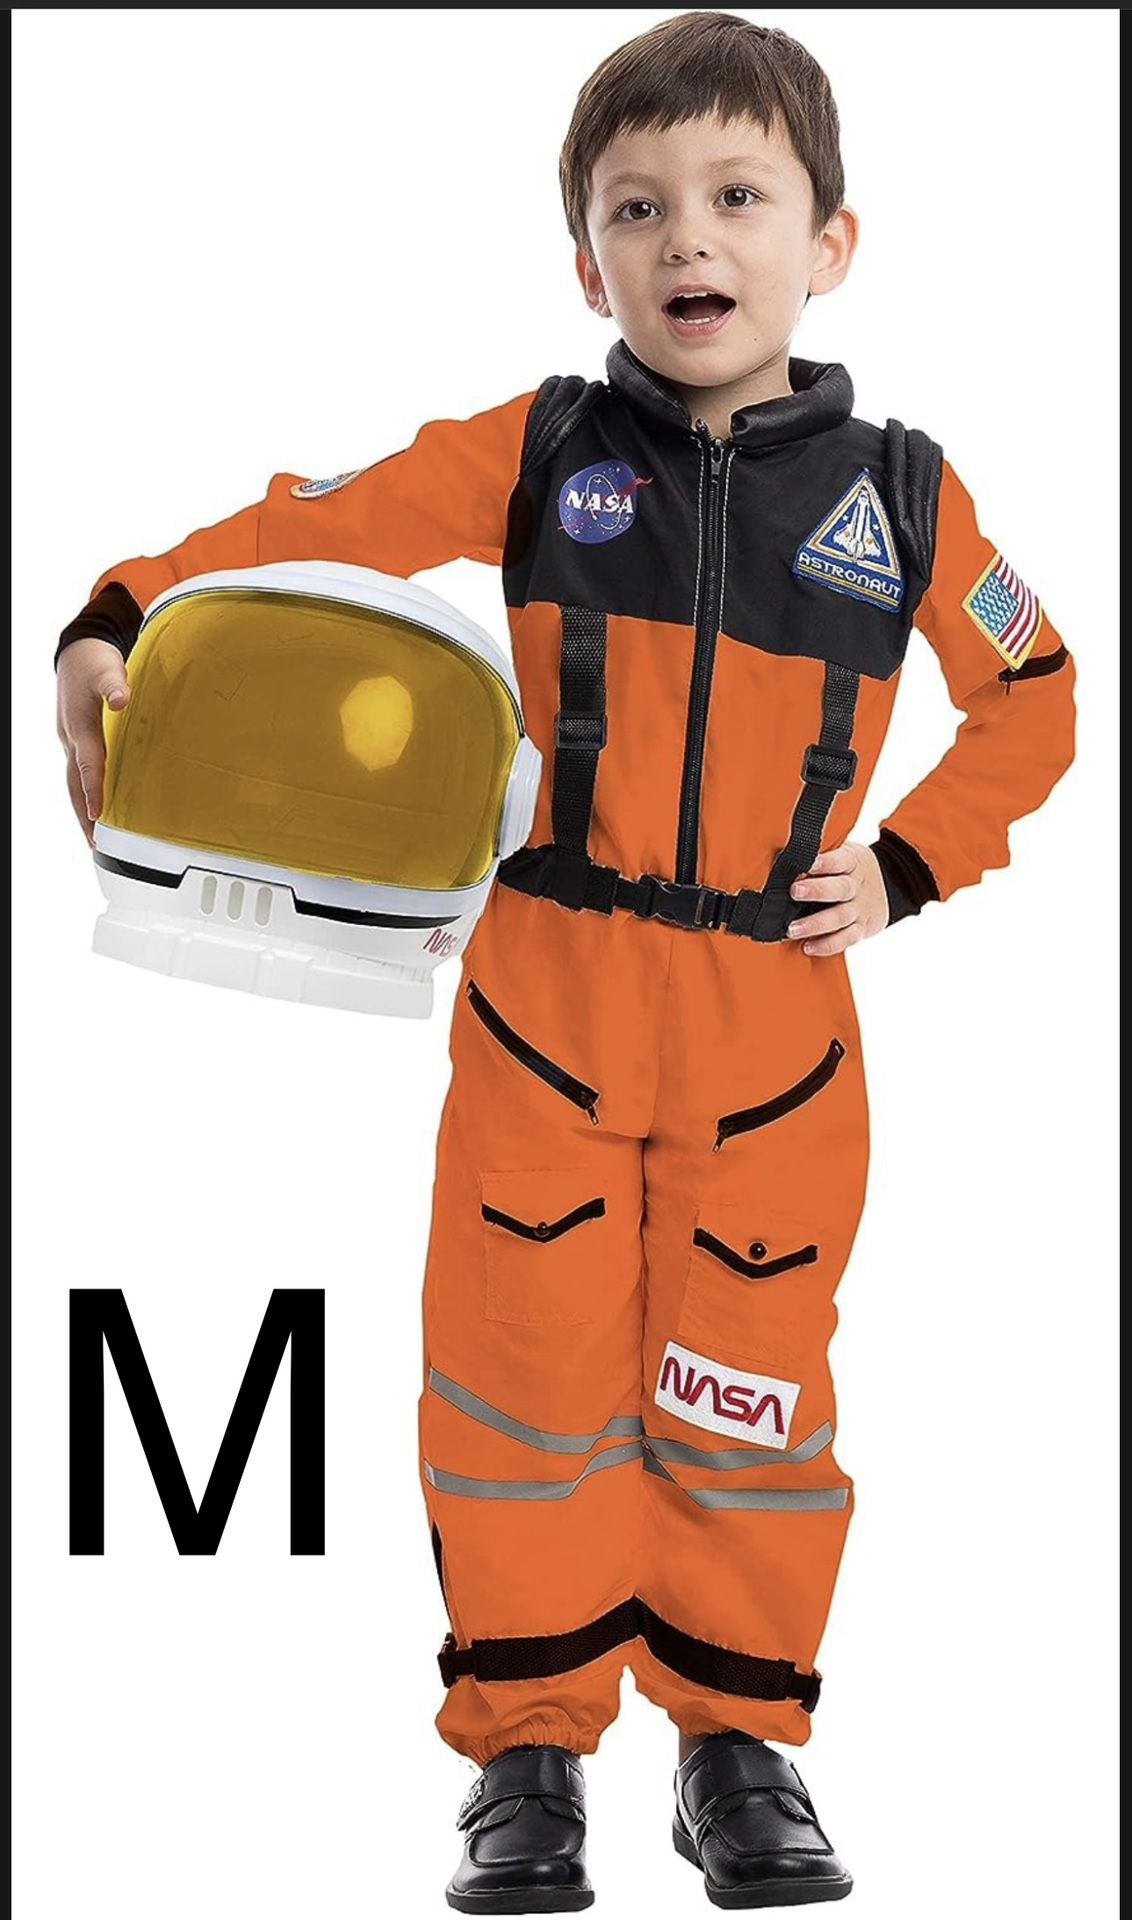 Children’s Medium Orange Astronaut Costume Suit And How Matt For Halloween Cosplay Or Dress Up